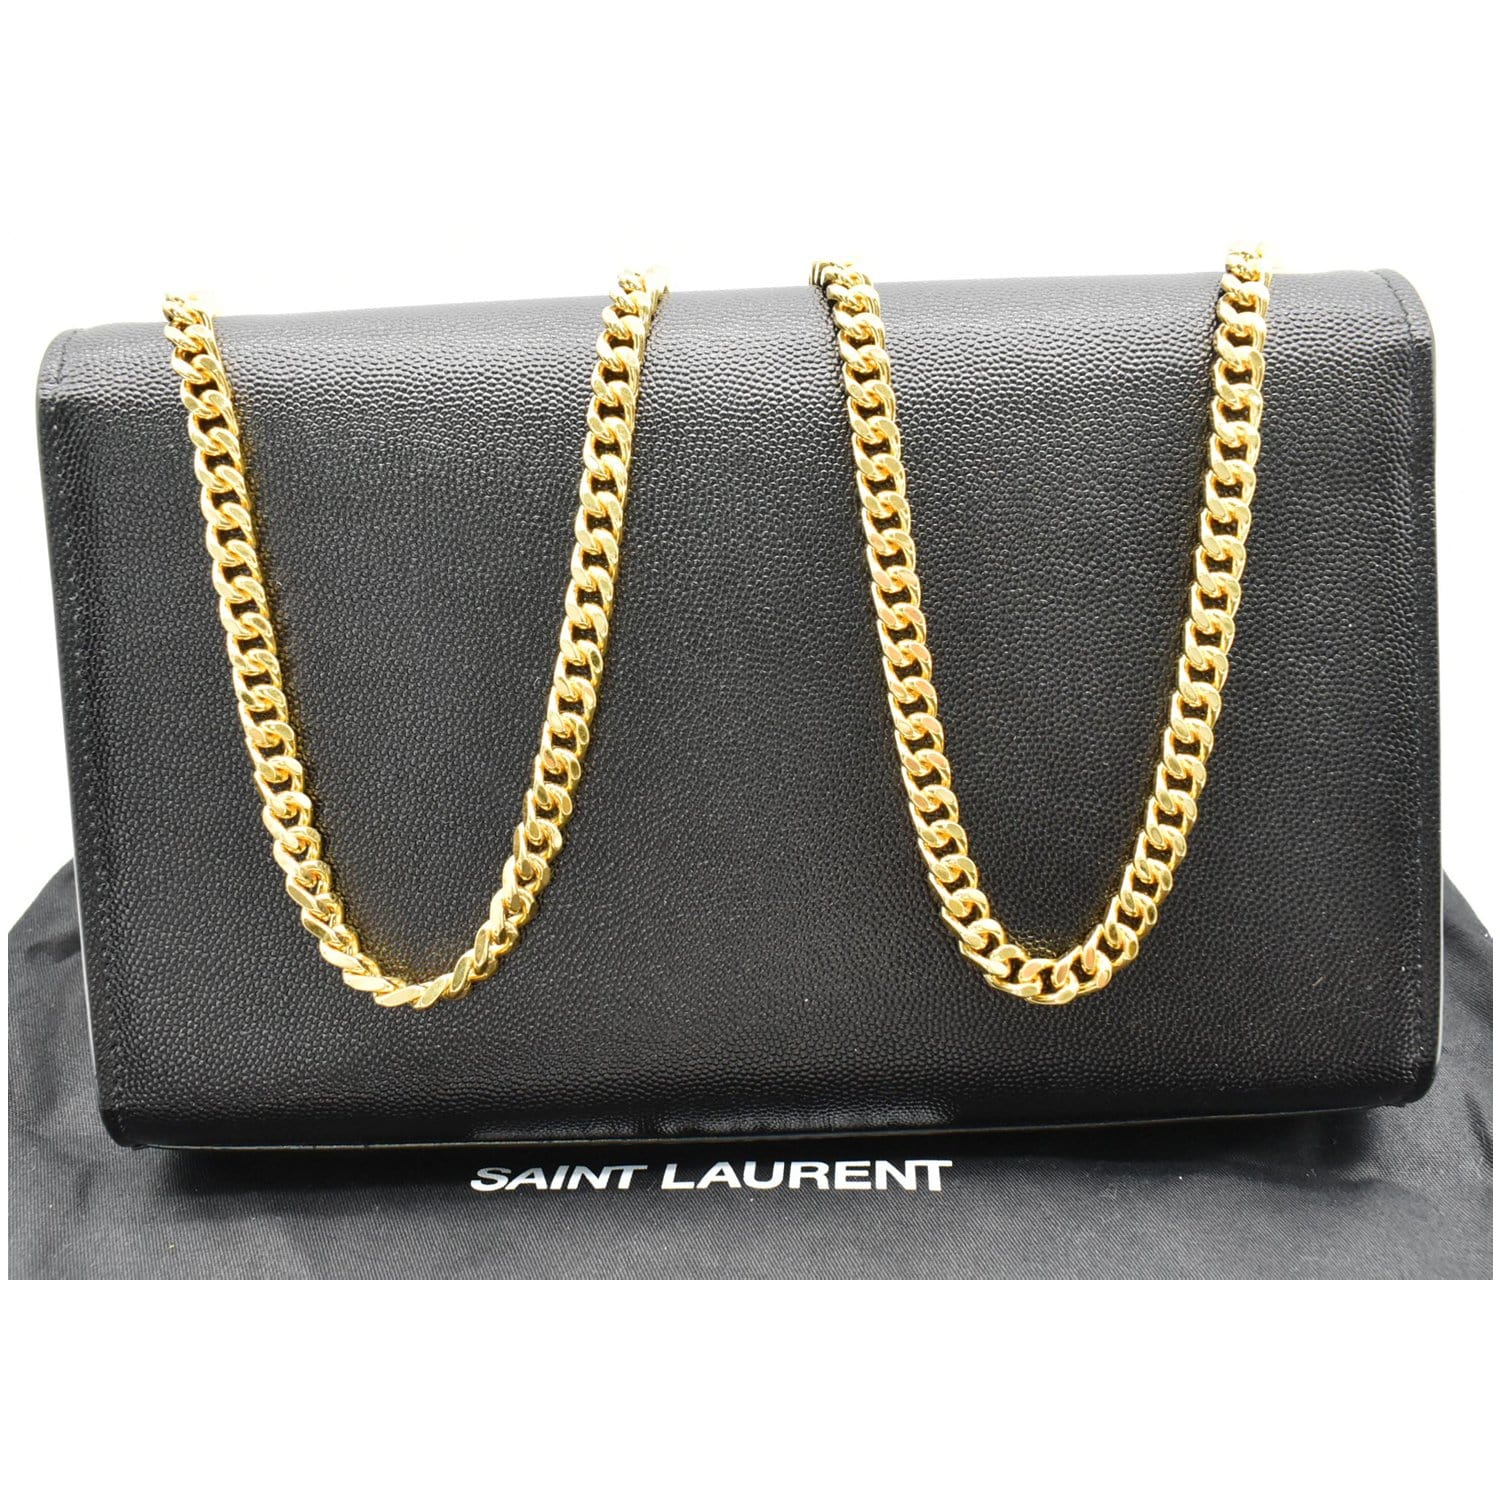 Saint Laurent Women's Gold Clutches